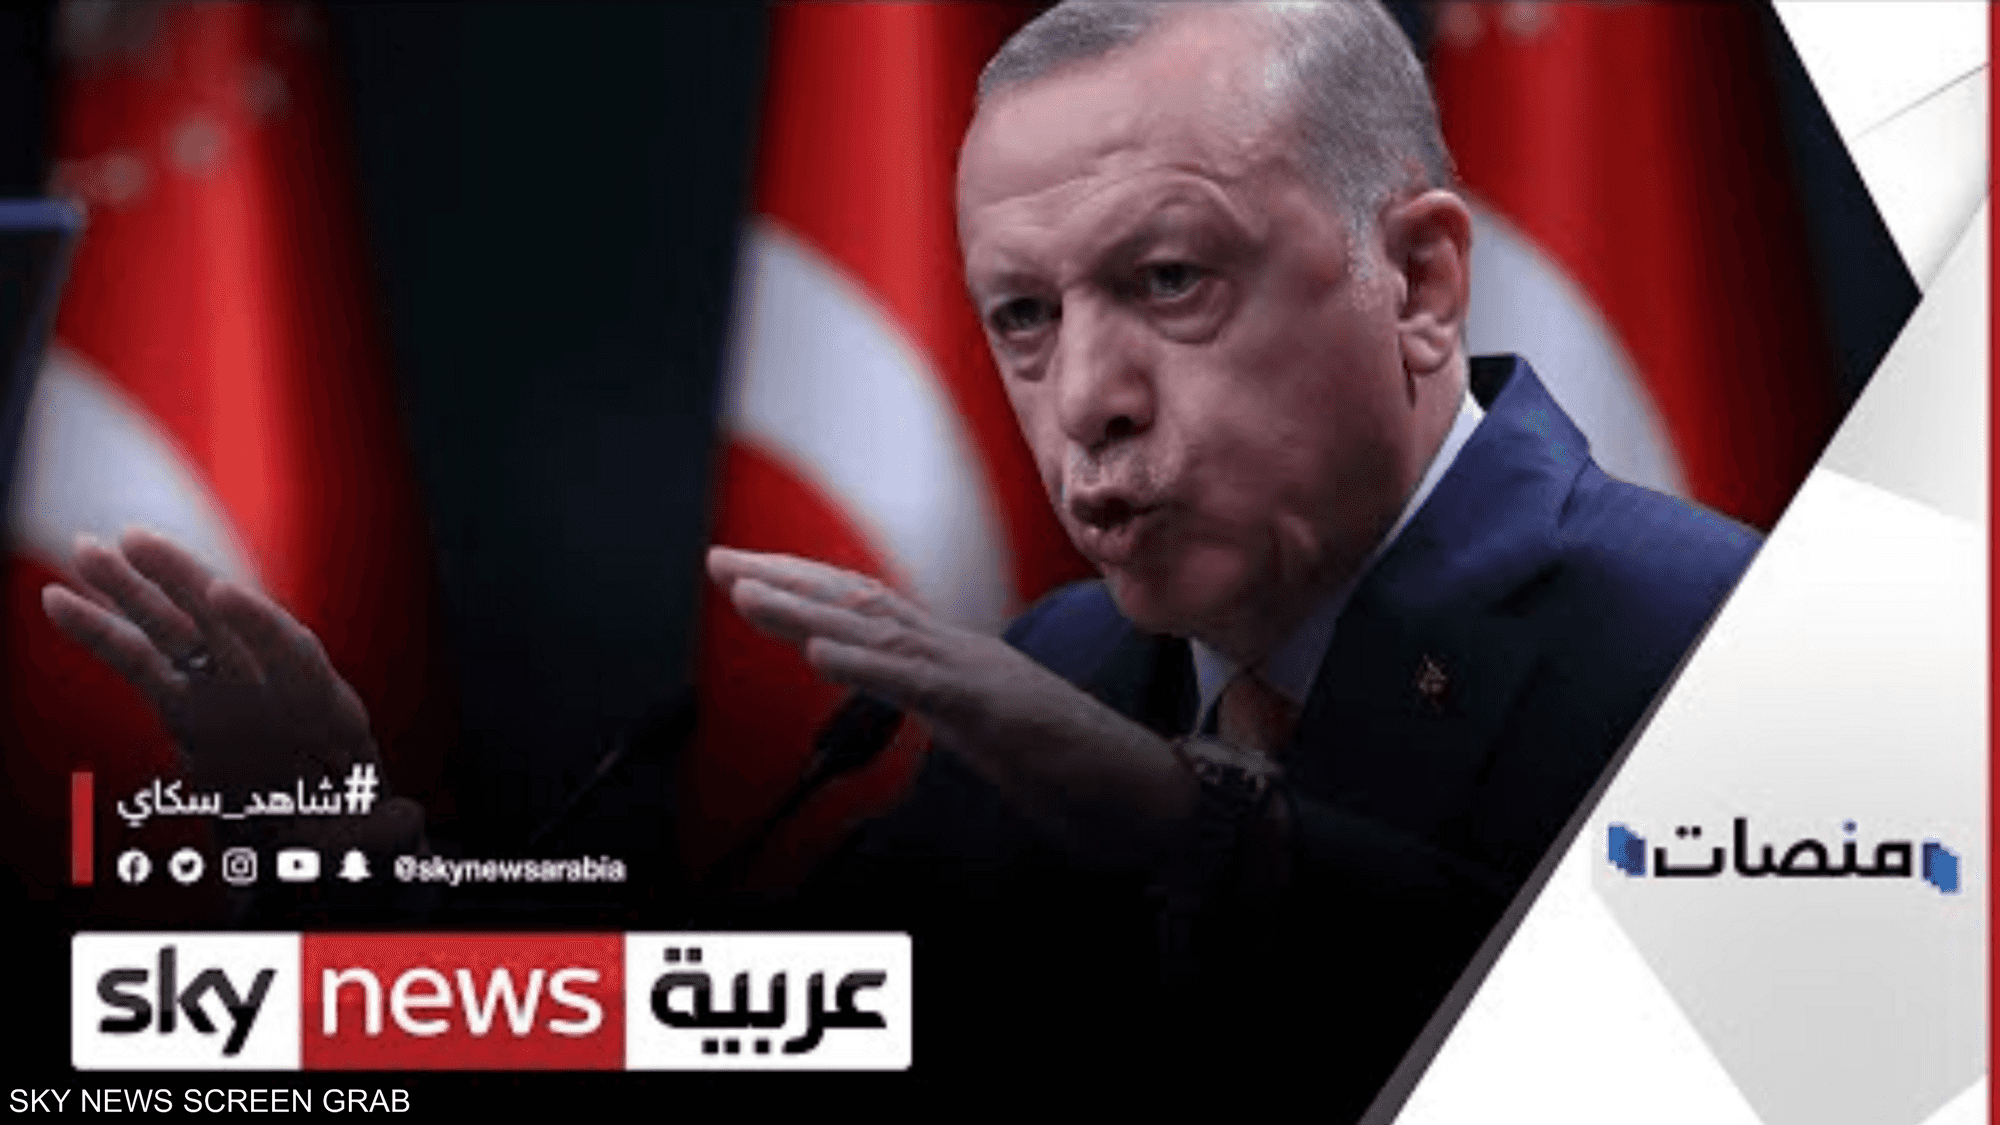 خطط أردوغان لزيادة راتبه تتسبب بجدل في تركيا